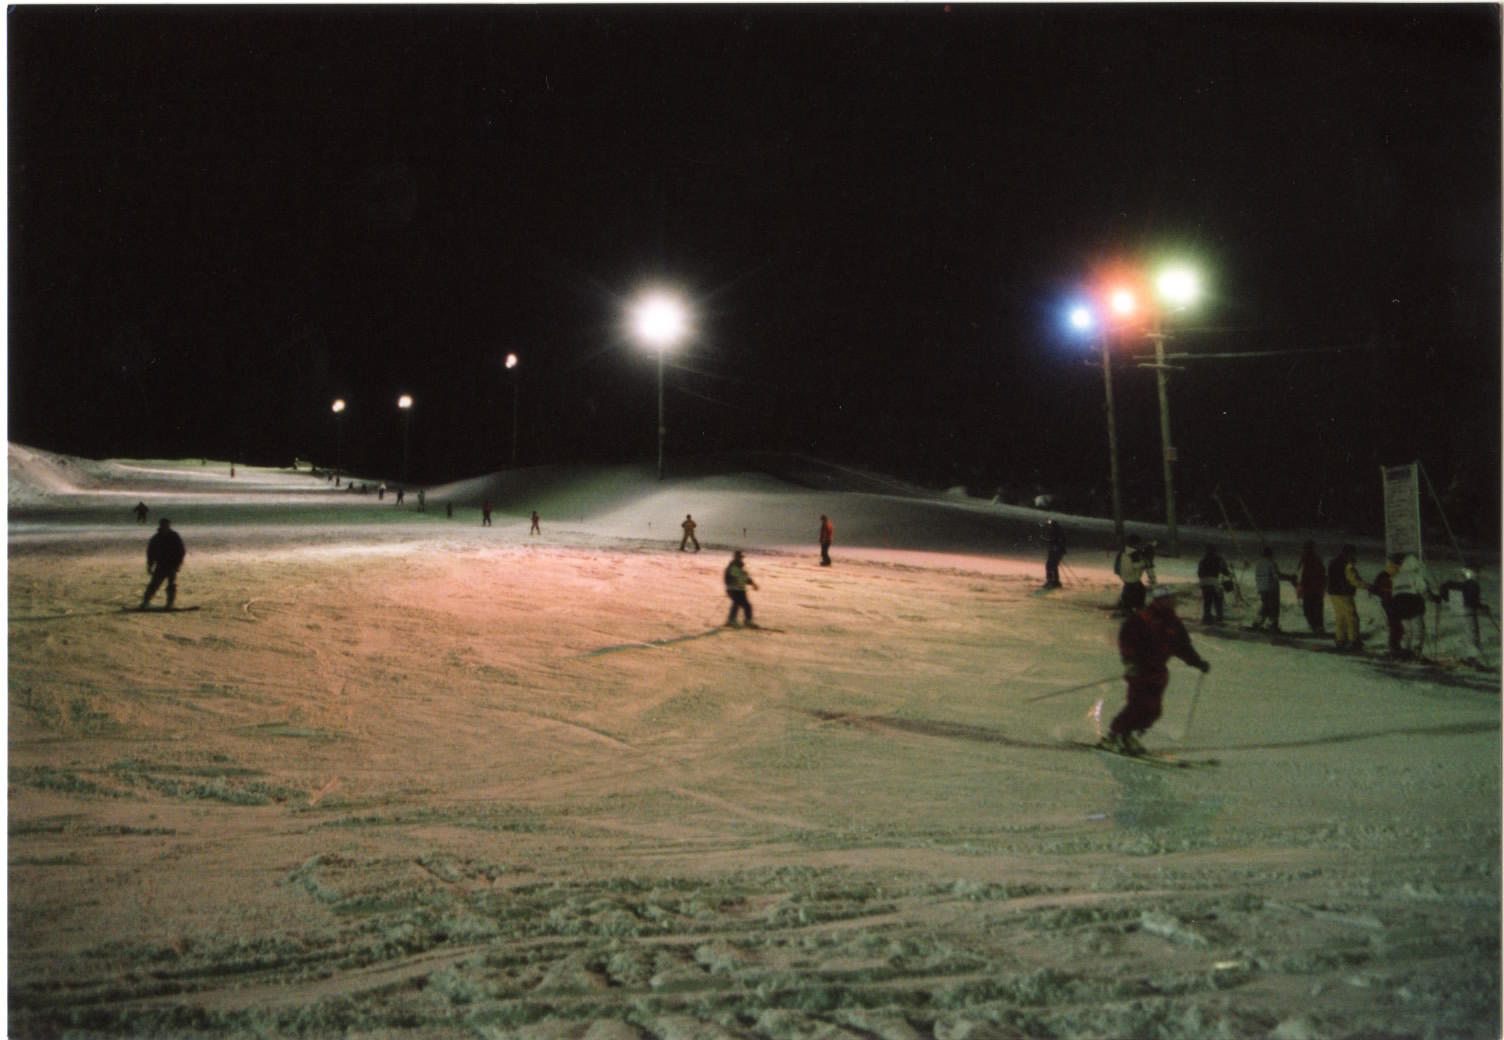 照明に照らされたゲレンデでナイタースキーを楽しんでいる人たちがいる秋山スキー場の写真